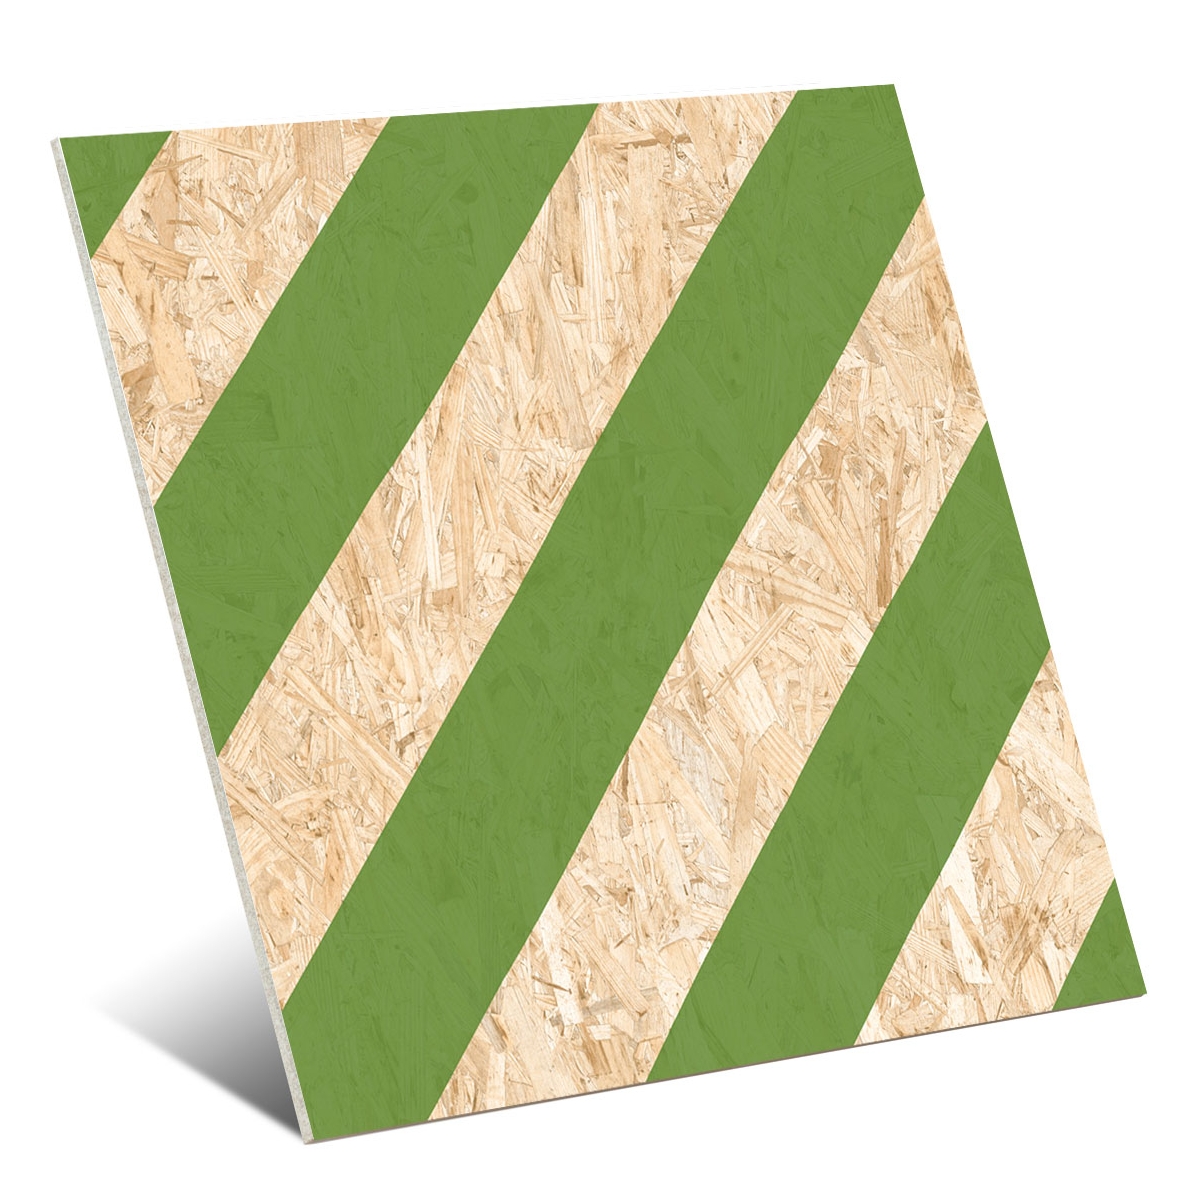 Pavimentos imitación madera Vives - Nenets Natural Verde Rectificado 59,3x59,3 cm (caja 1,05 m2)